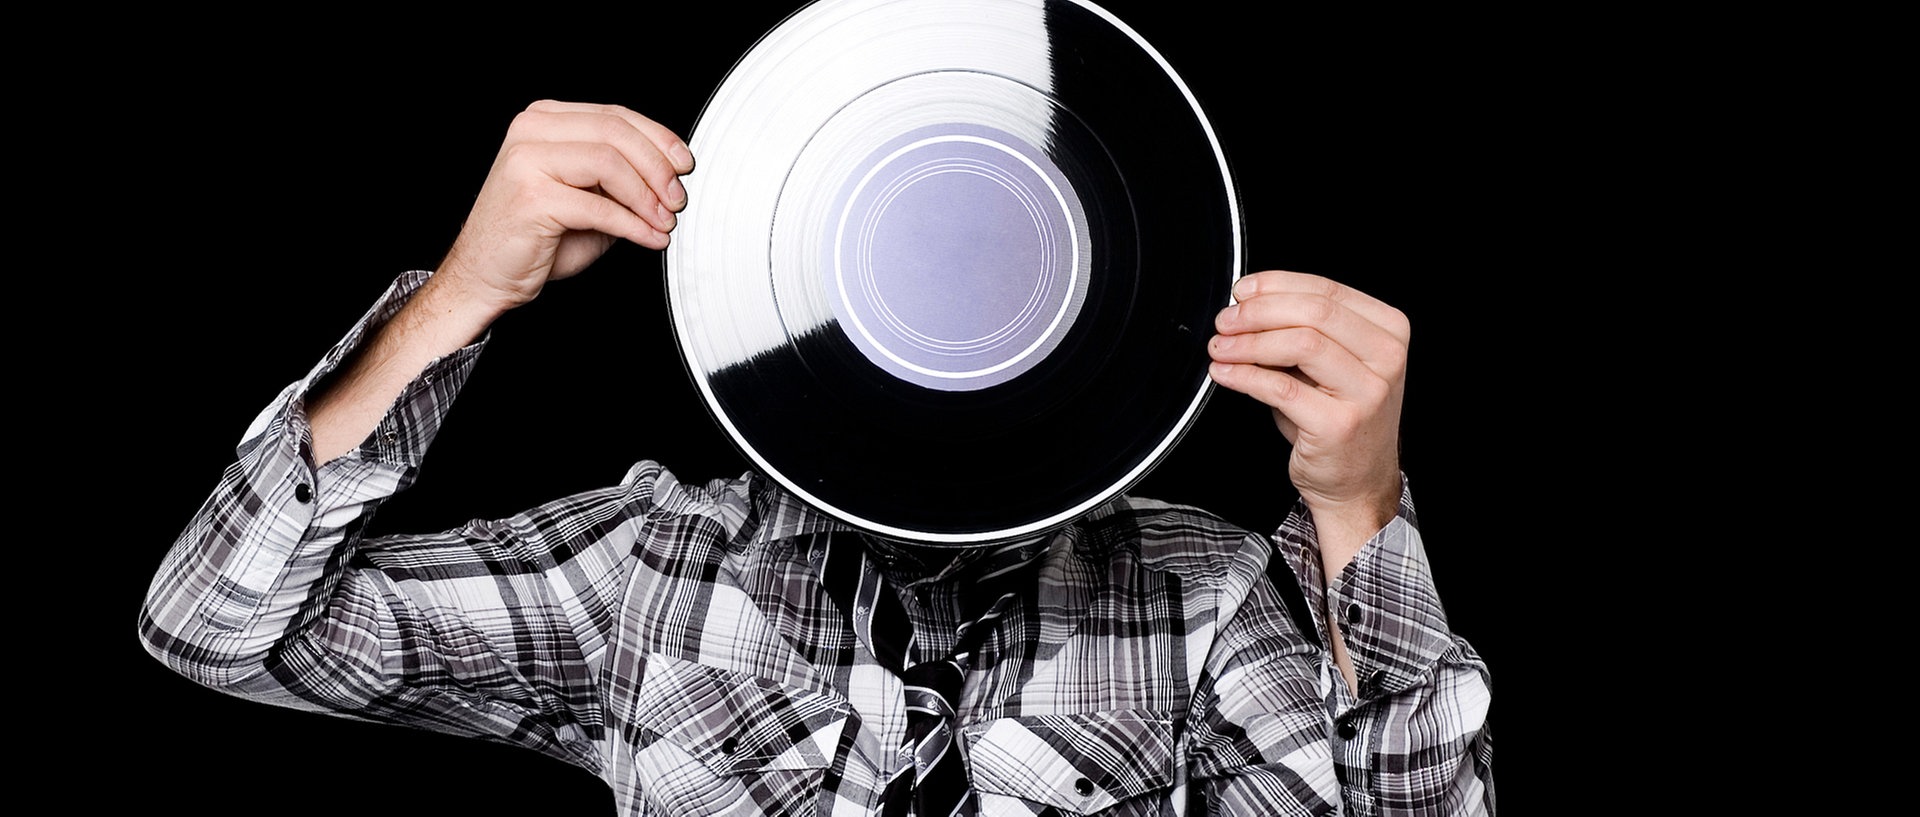 Ein Junge mit grauem Kapuzenpulli hält eine Schallplatte vor sein Gesicht., © PlainpictureFoto: Tabor Gus